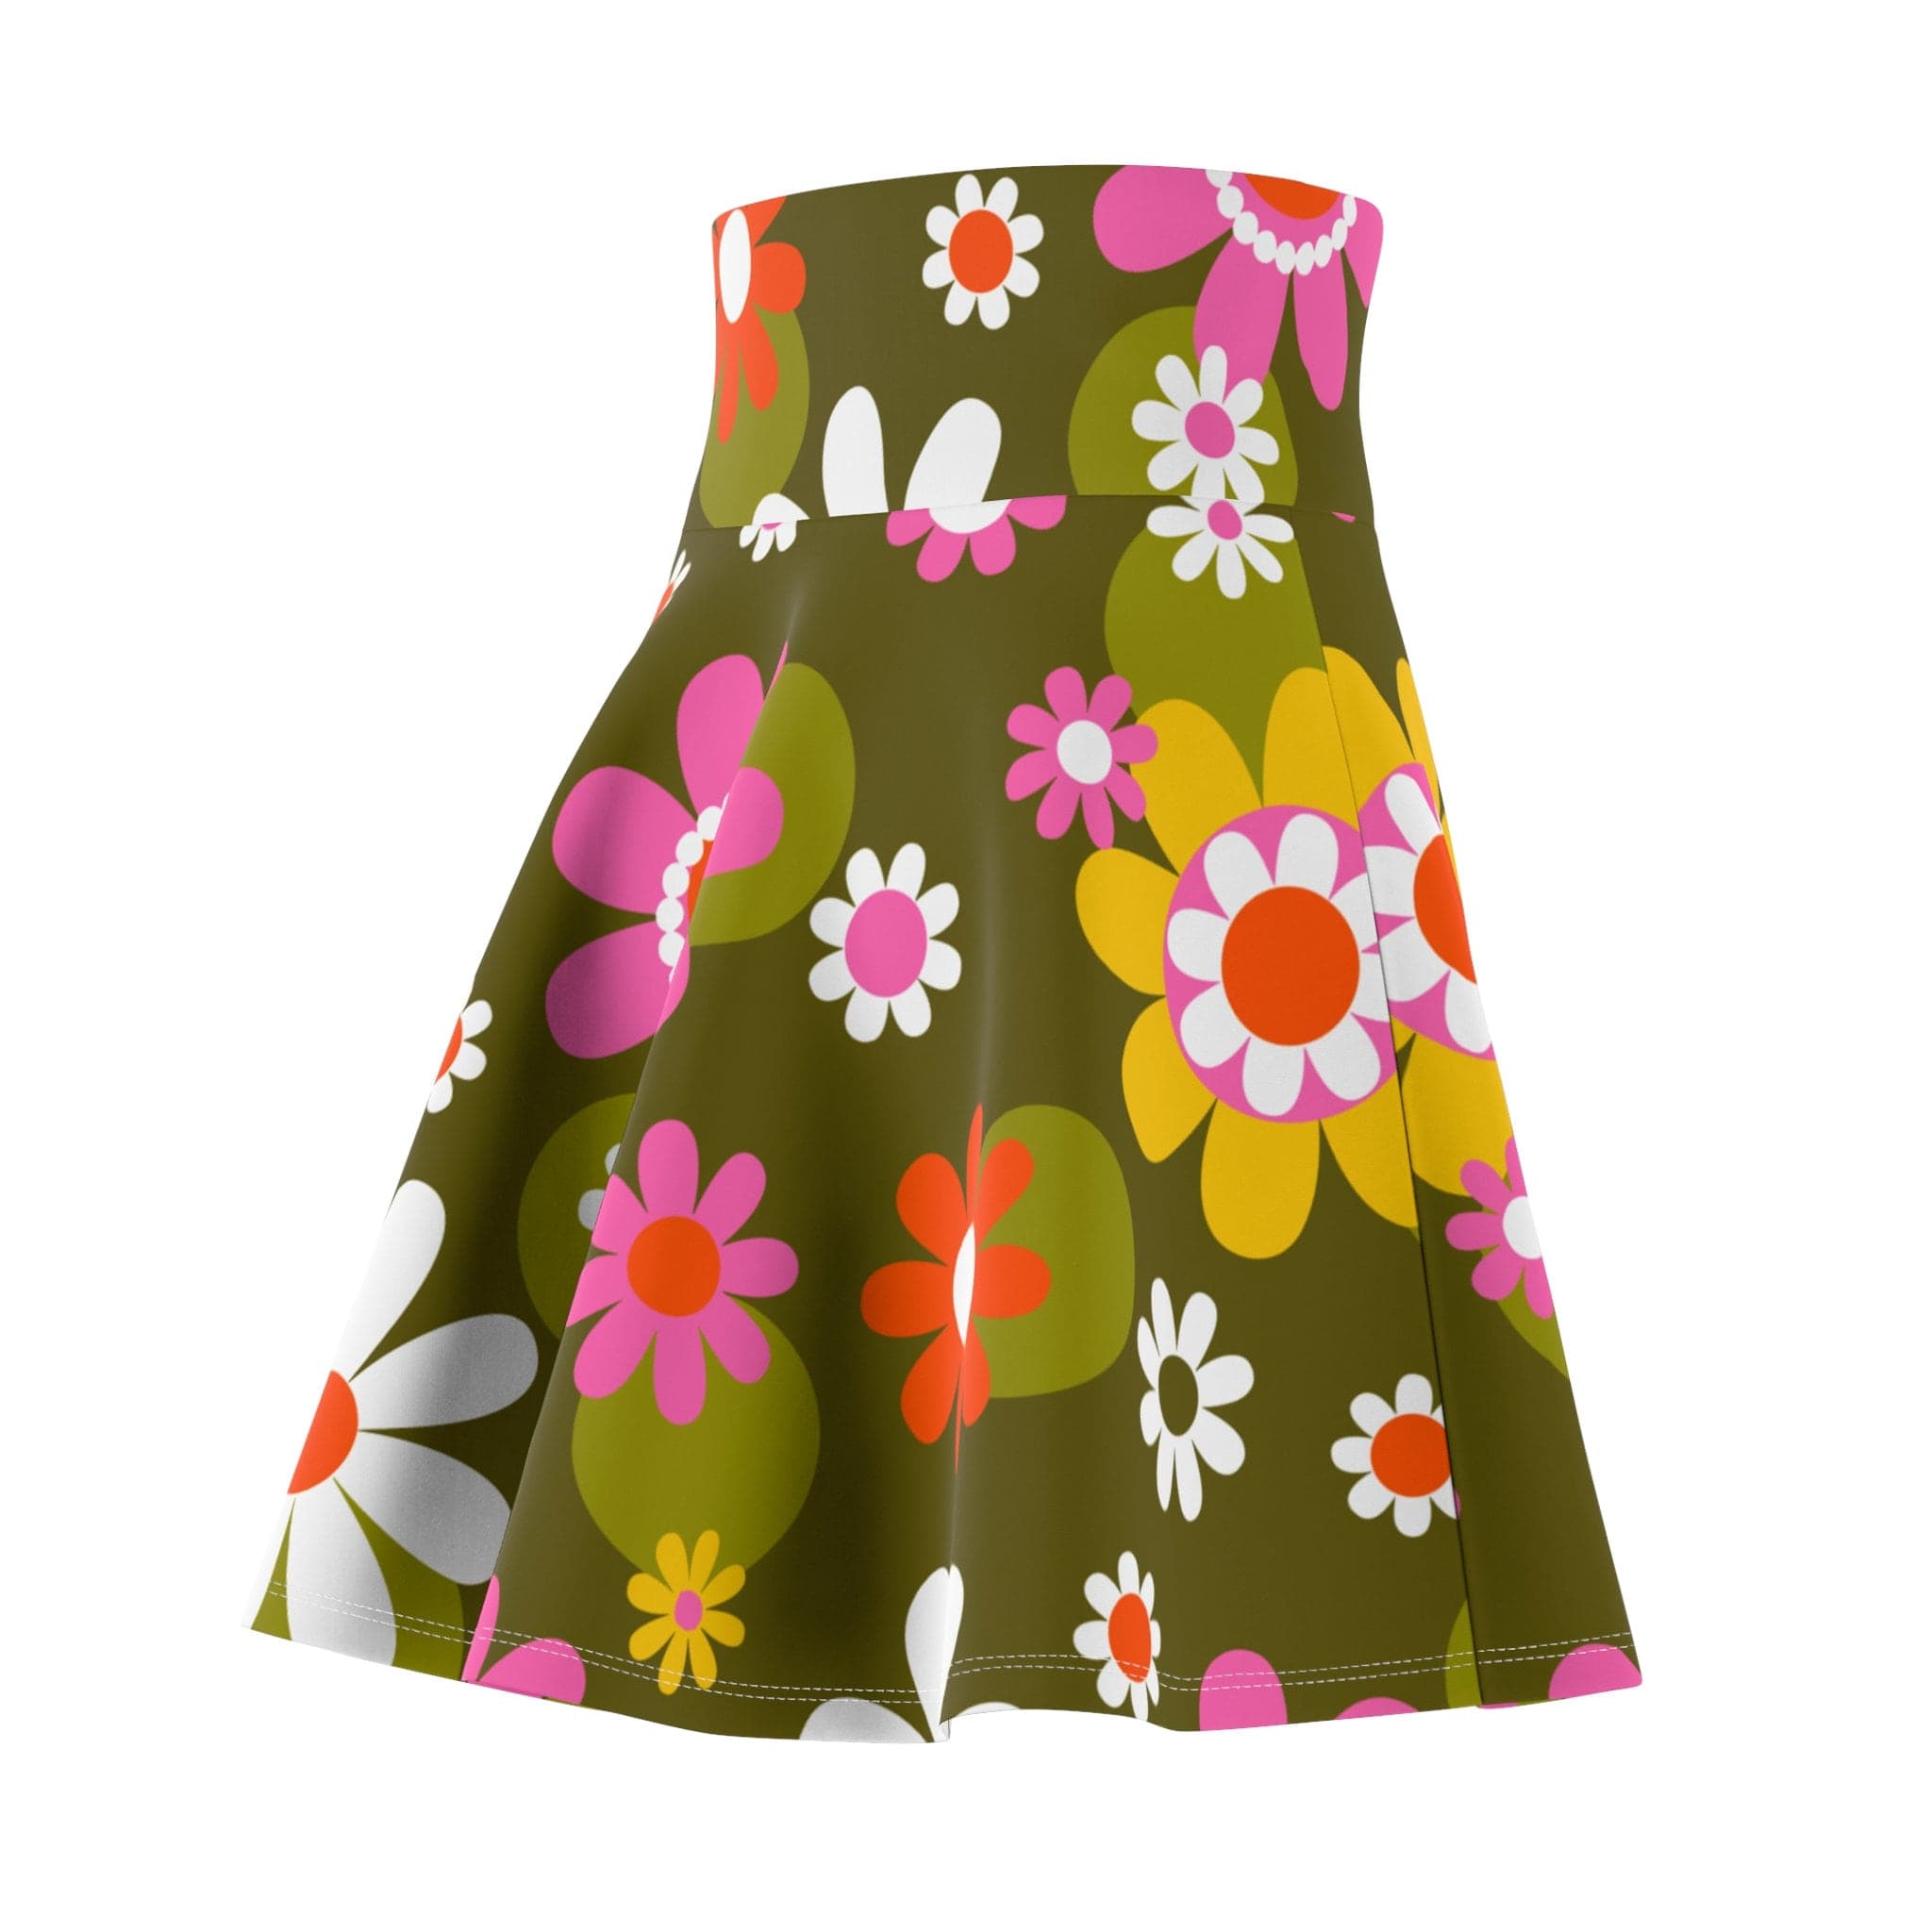 Kate McEnroe New York Groovy Flower Power Hippie Daisies 70s Disco Party Skirt, Retro Pink, Green Mid Century Modern Skater Skirt - 129882223 Skirts